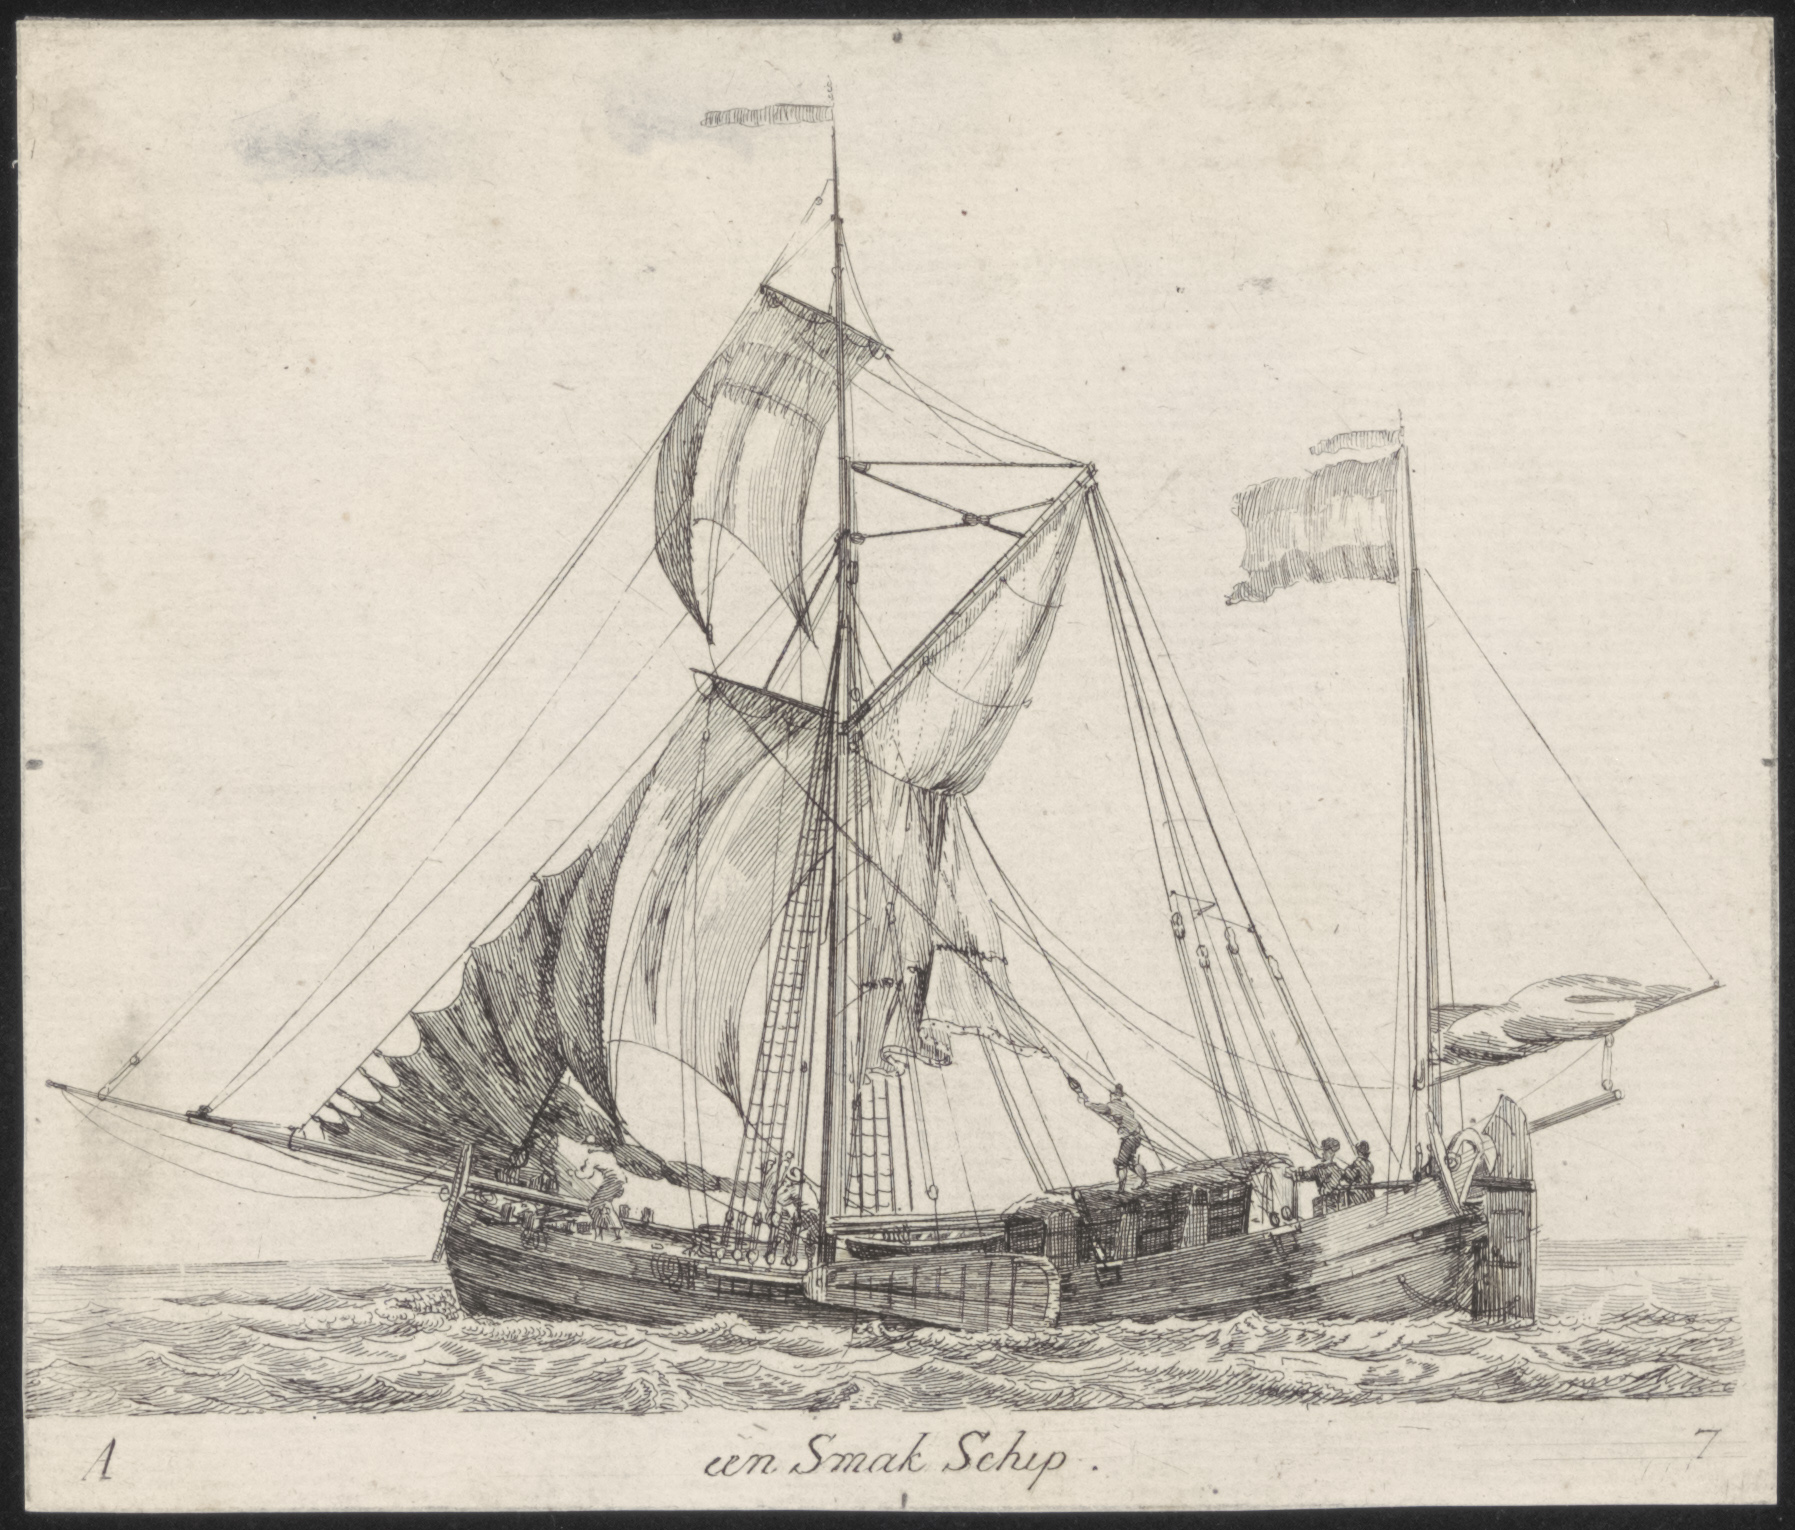 Prent van een Smak Schip. Vervaardiger: Gerrit Groenewegen 1786-1789. Bron: Zuiderzeecollectie